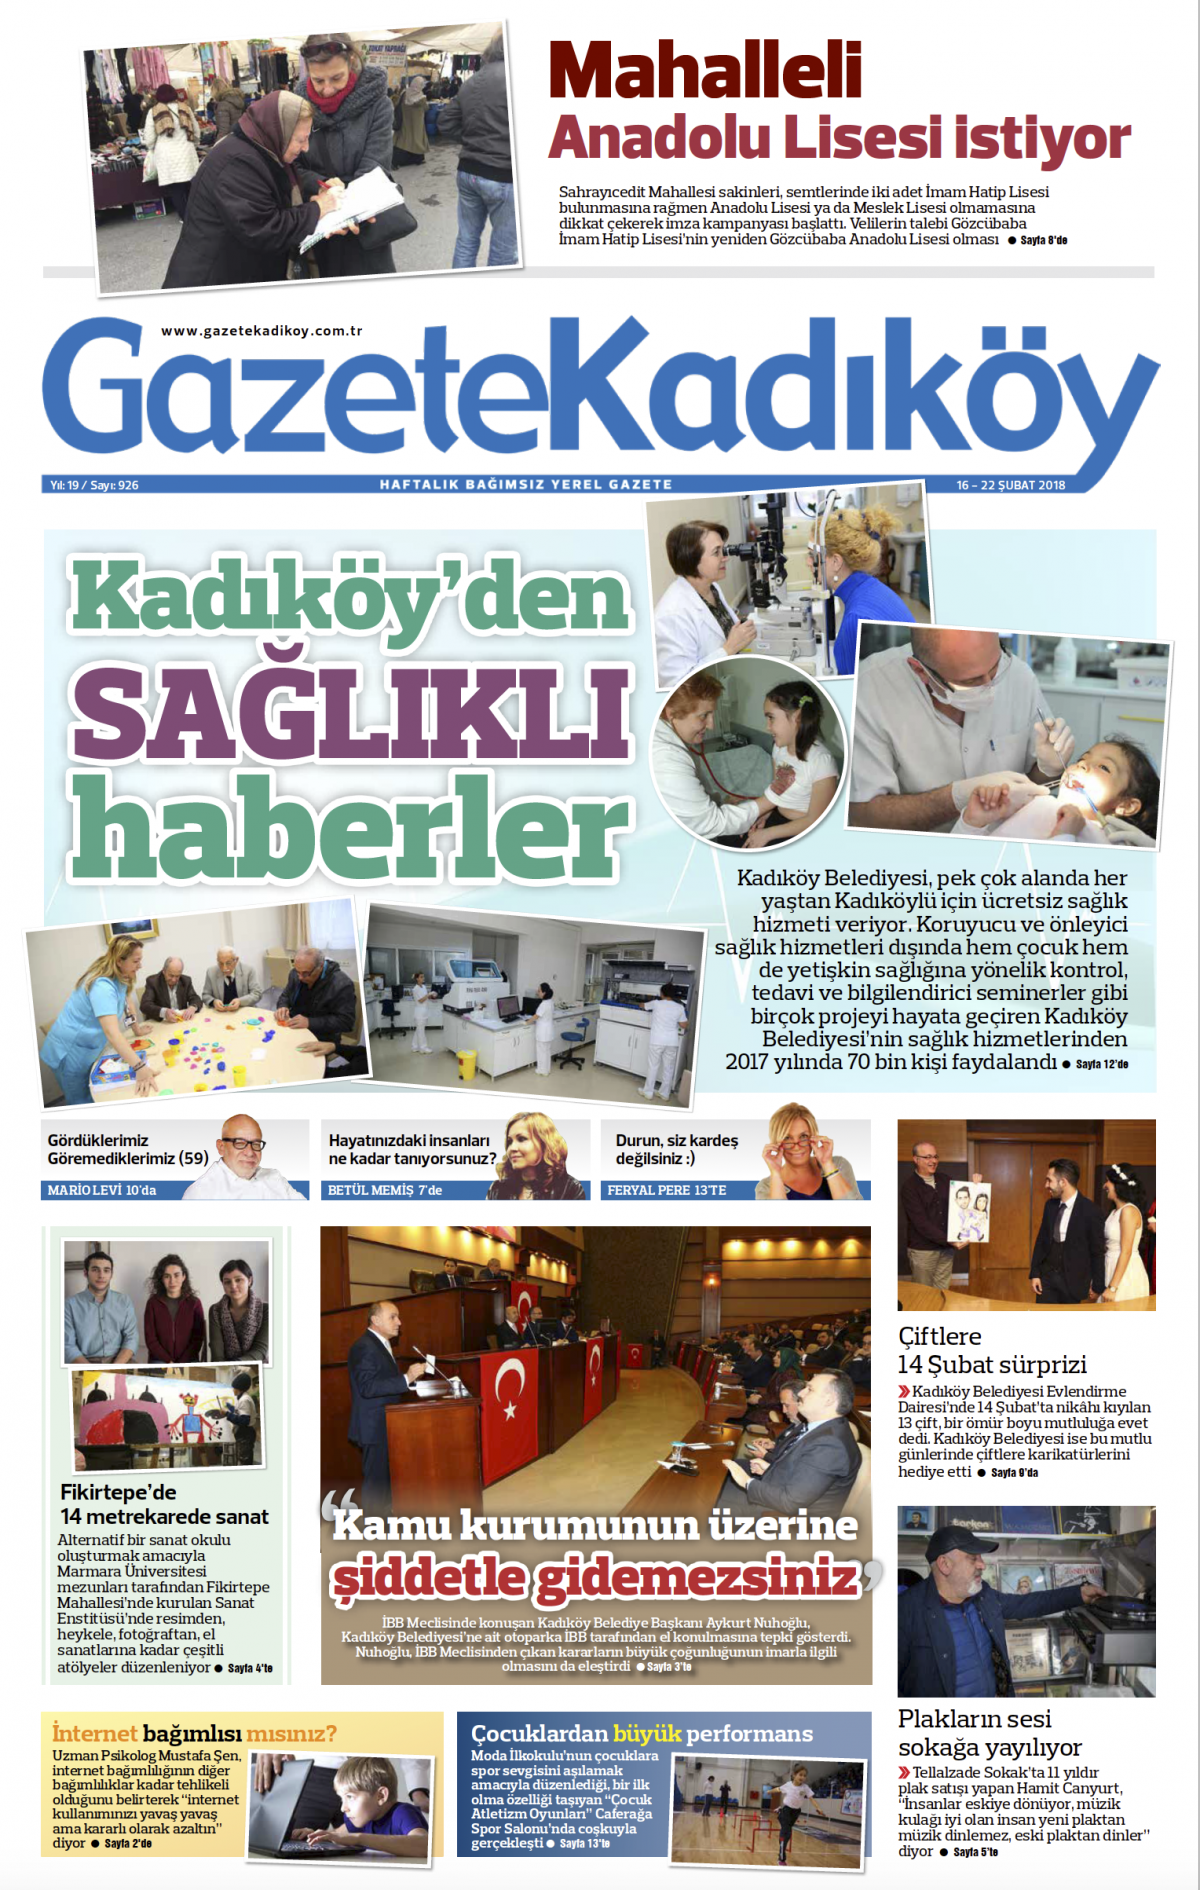 Gazete Kadıköy - 926. SAYI